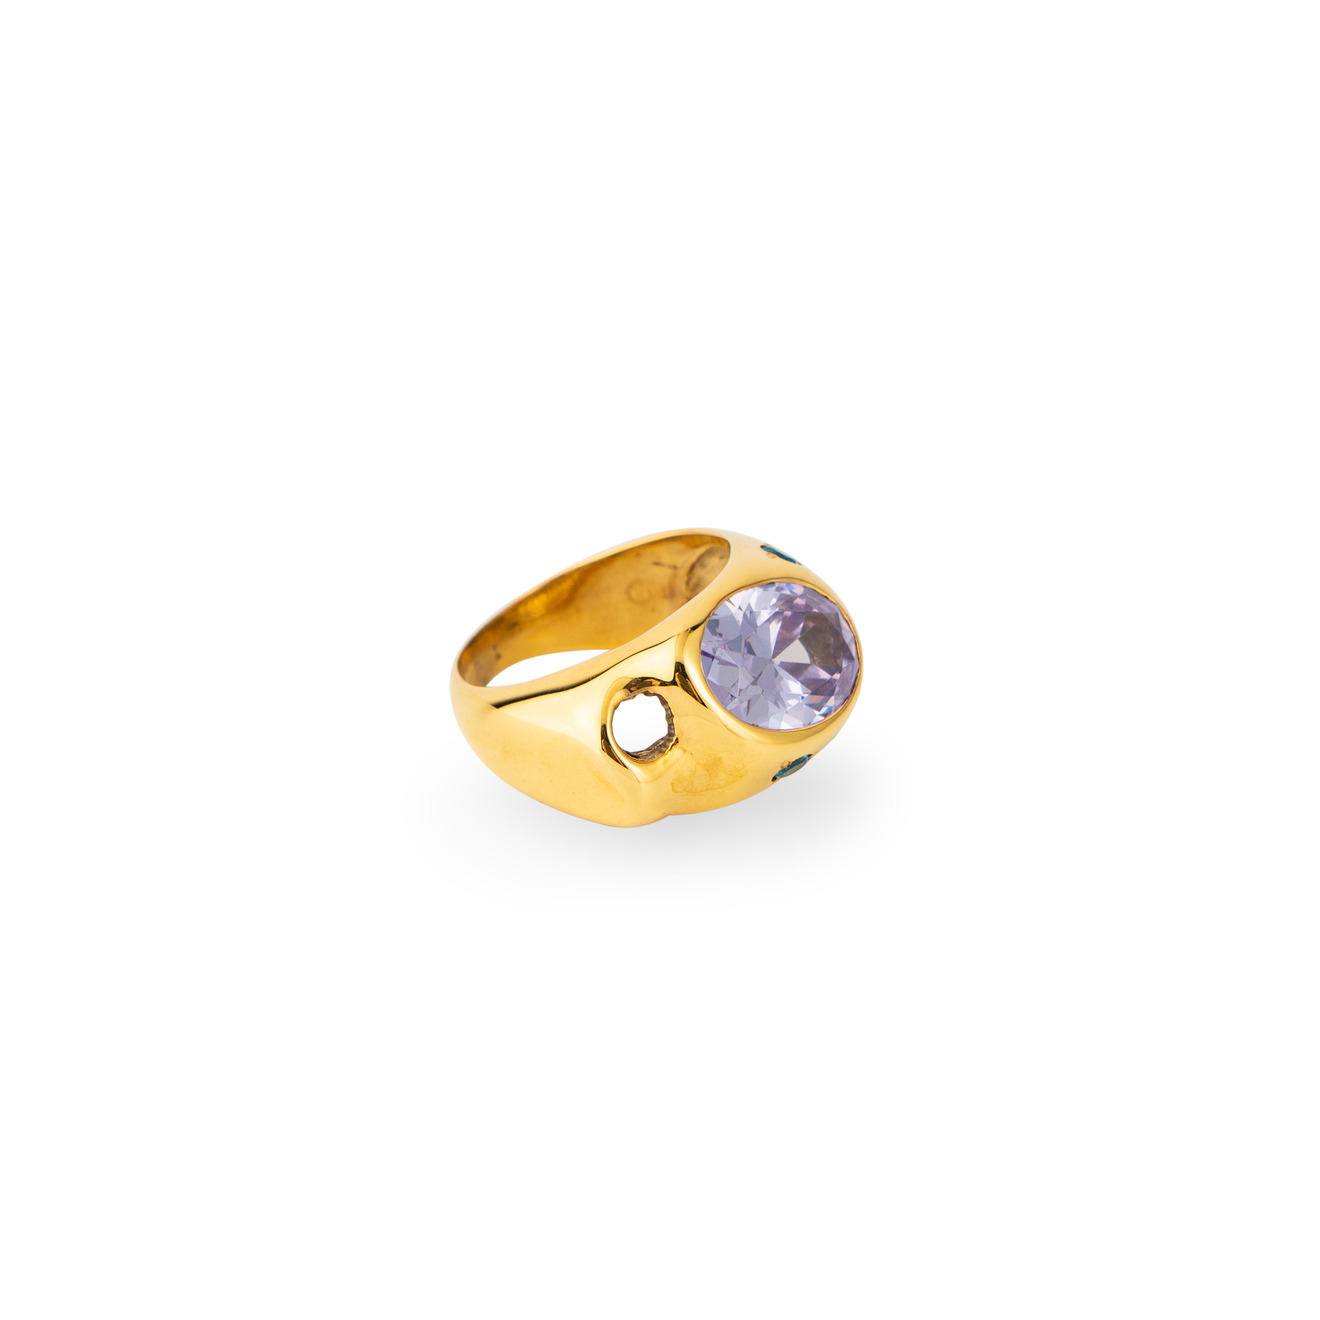 цена Janashia Золотистое кольцо Ava волнообразной формы со вставками из розово-голубых кристаллов